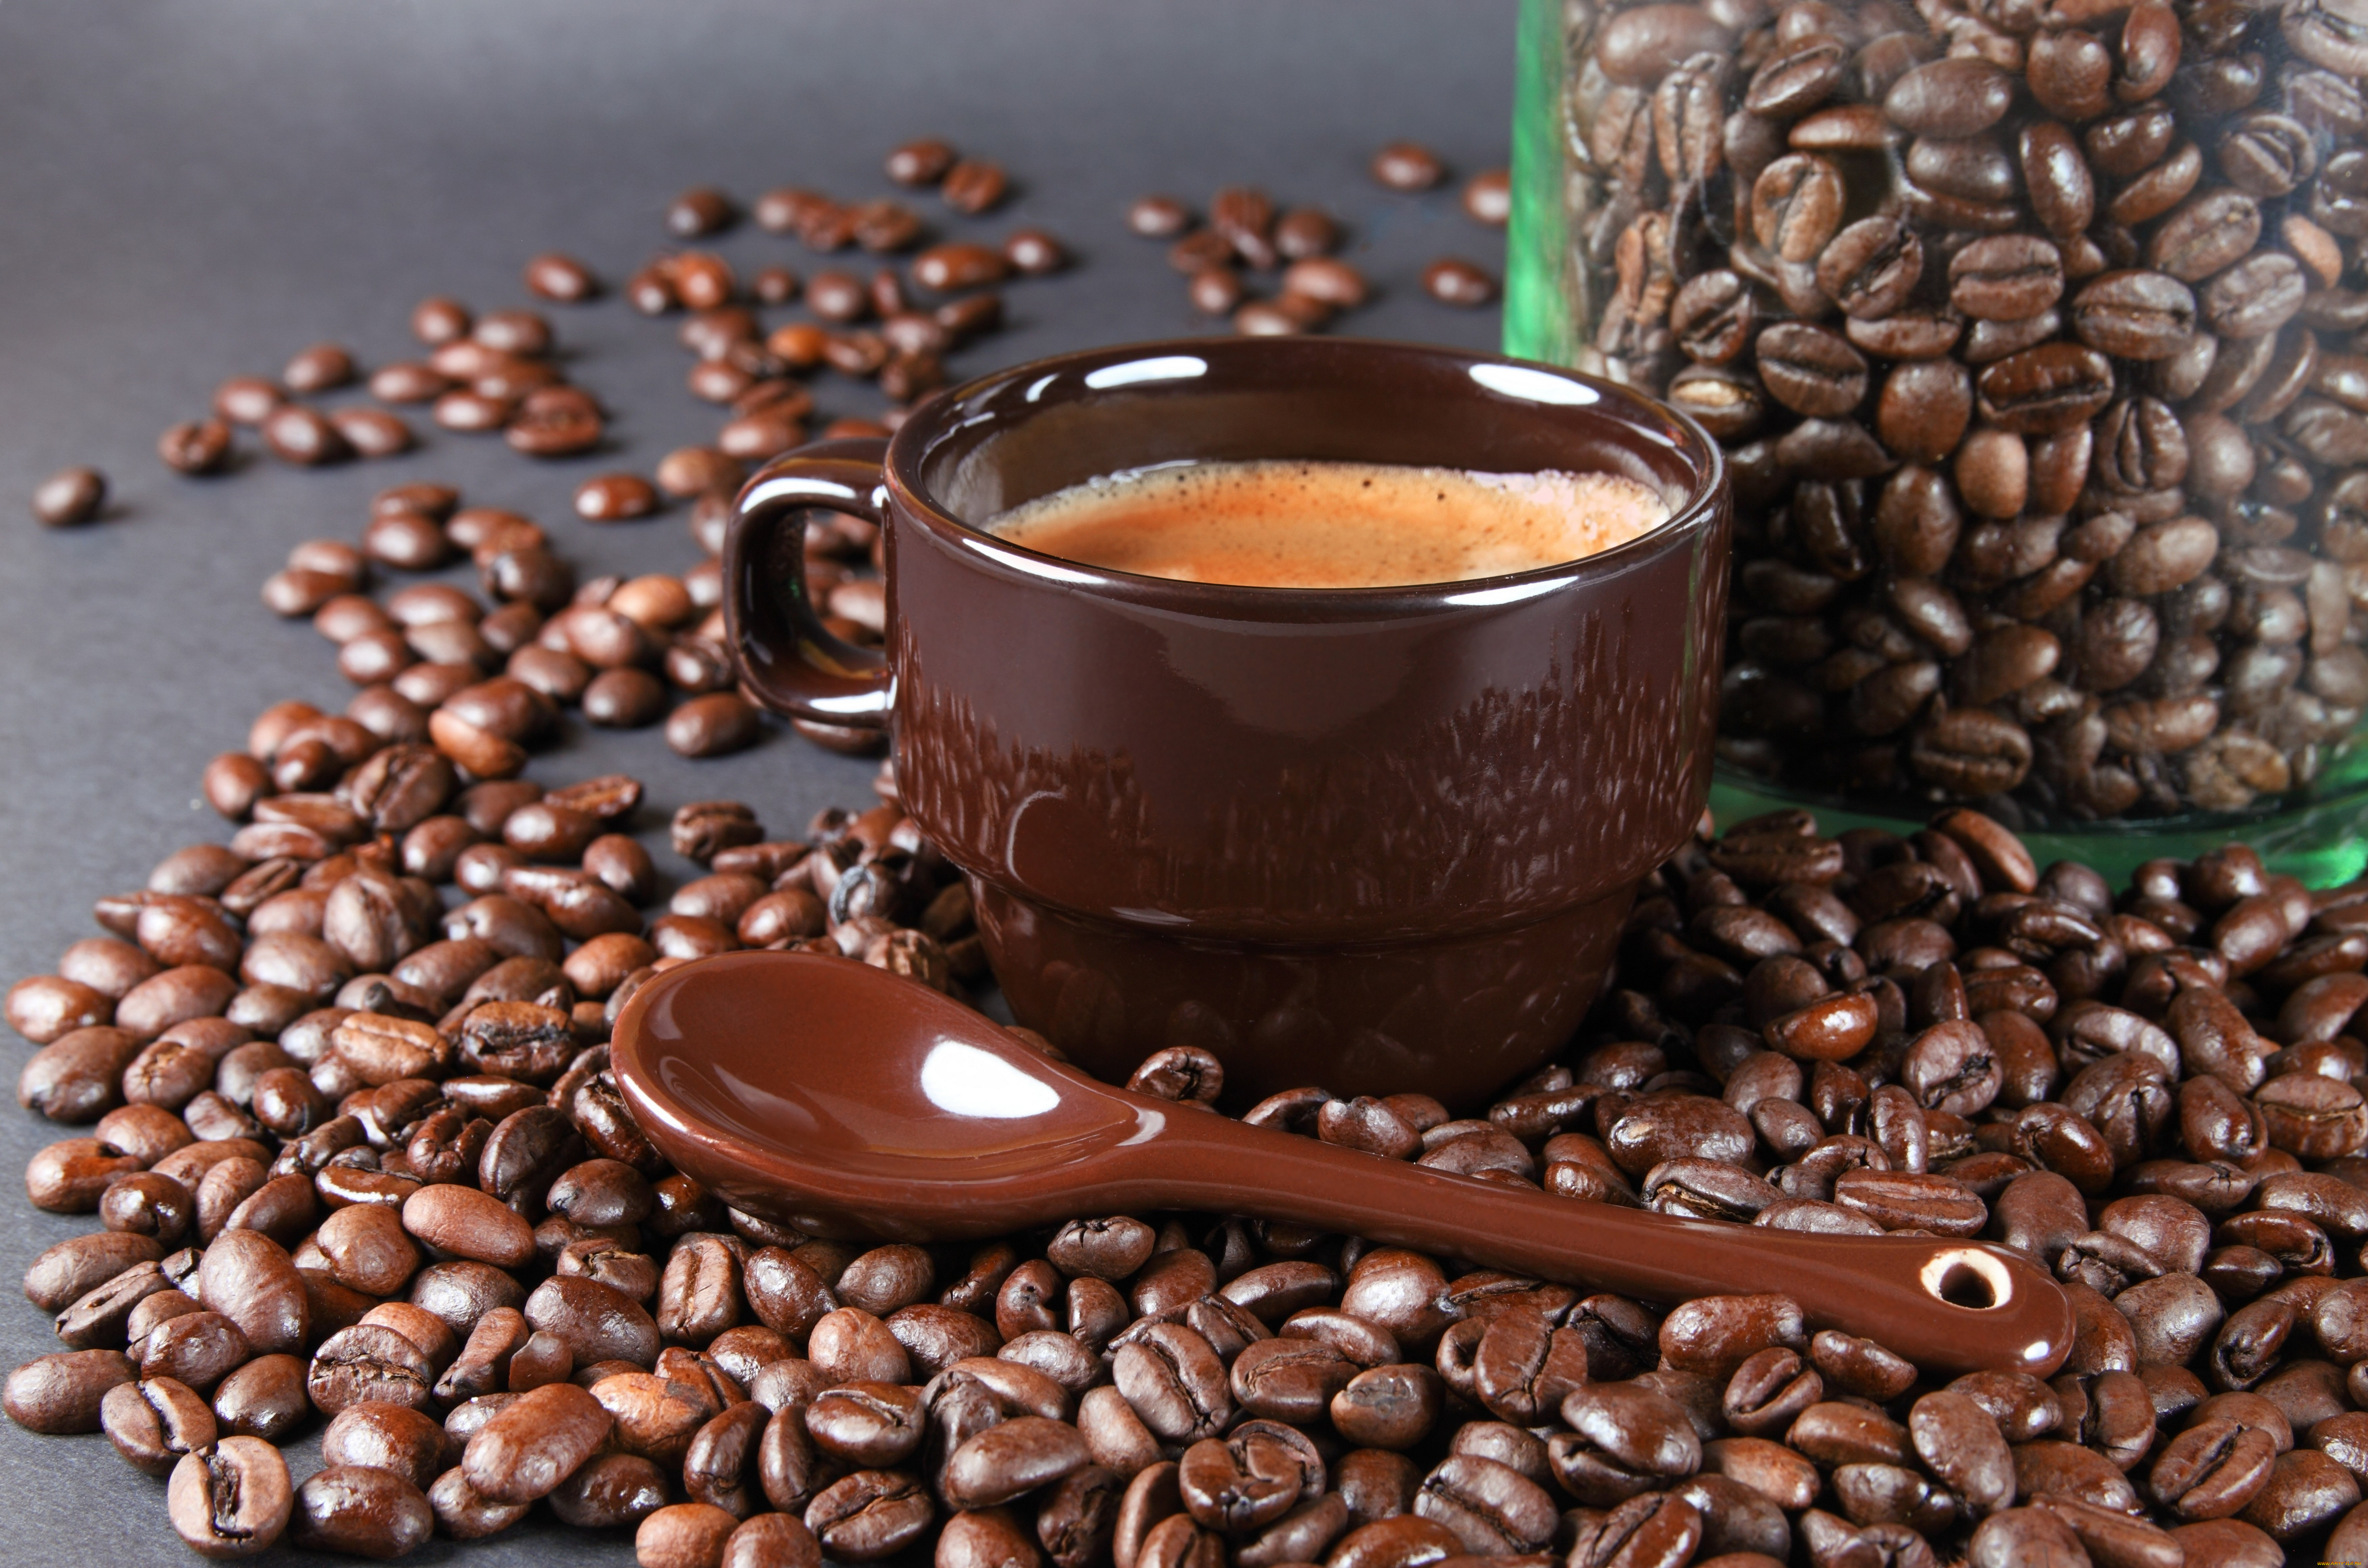 Фото с кофе. Кофе. Чашка кофе. Кофе в зернах. Чашка с кофейными зернами.